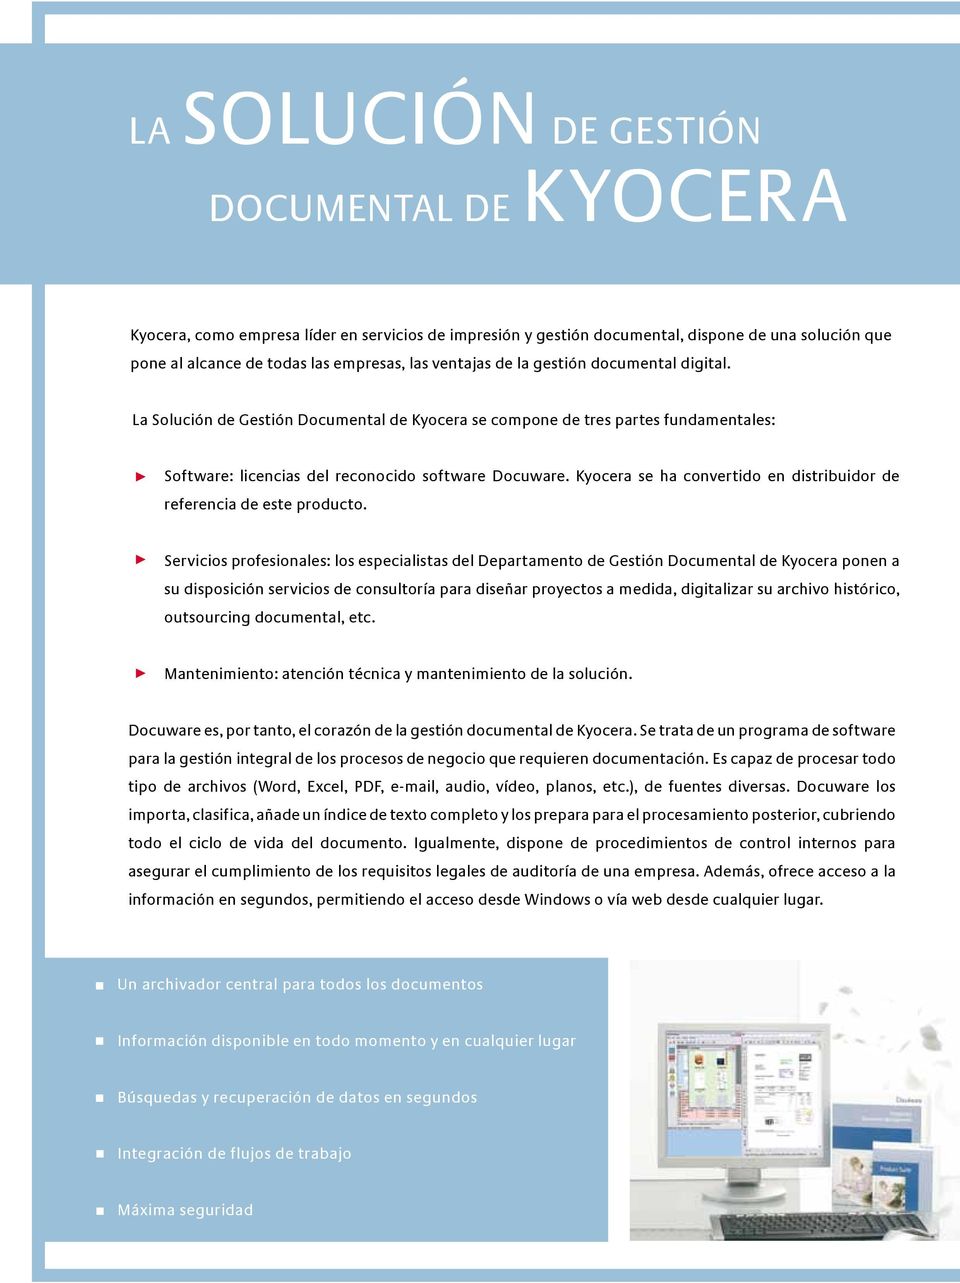 Kyocera se ha convertido en distribuidor de referencia de este producto.